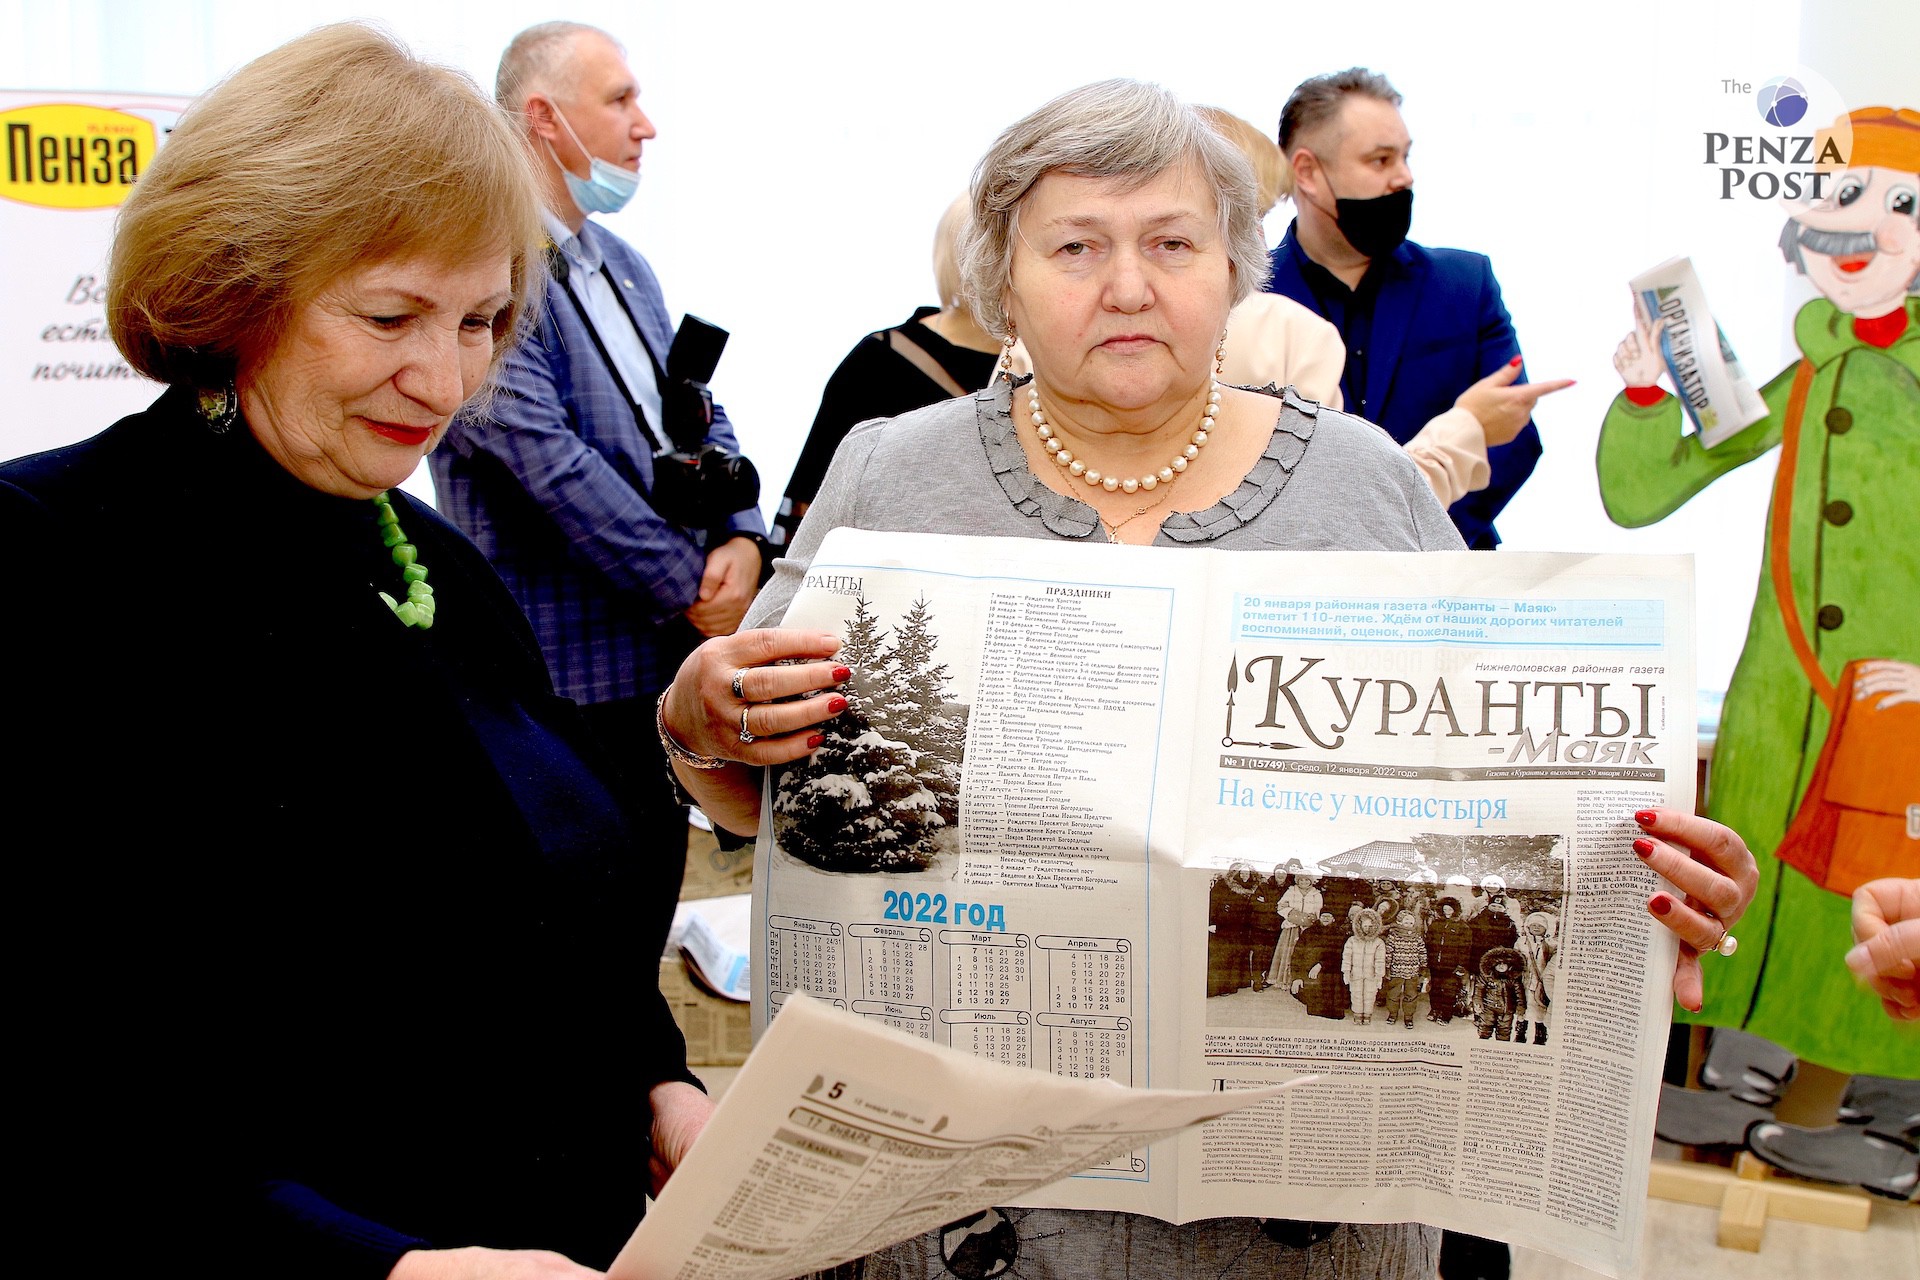 День российской печати в Пензе впервые обрел человеческое лицо, командный дух и... флер всепрощения. Репортаж в 106 фото с места события